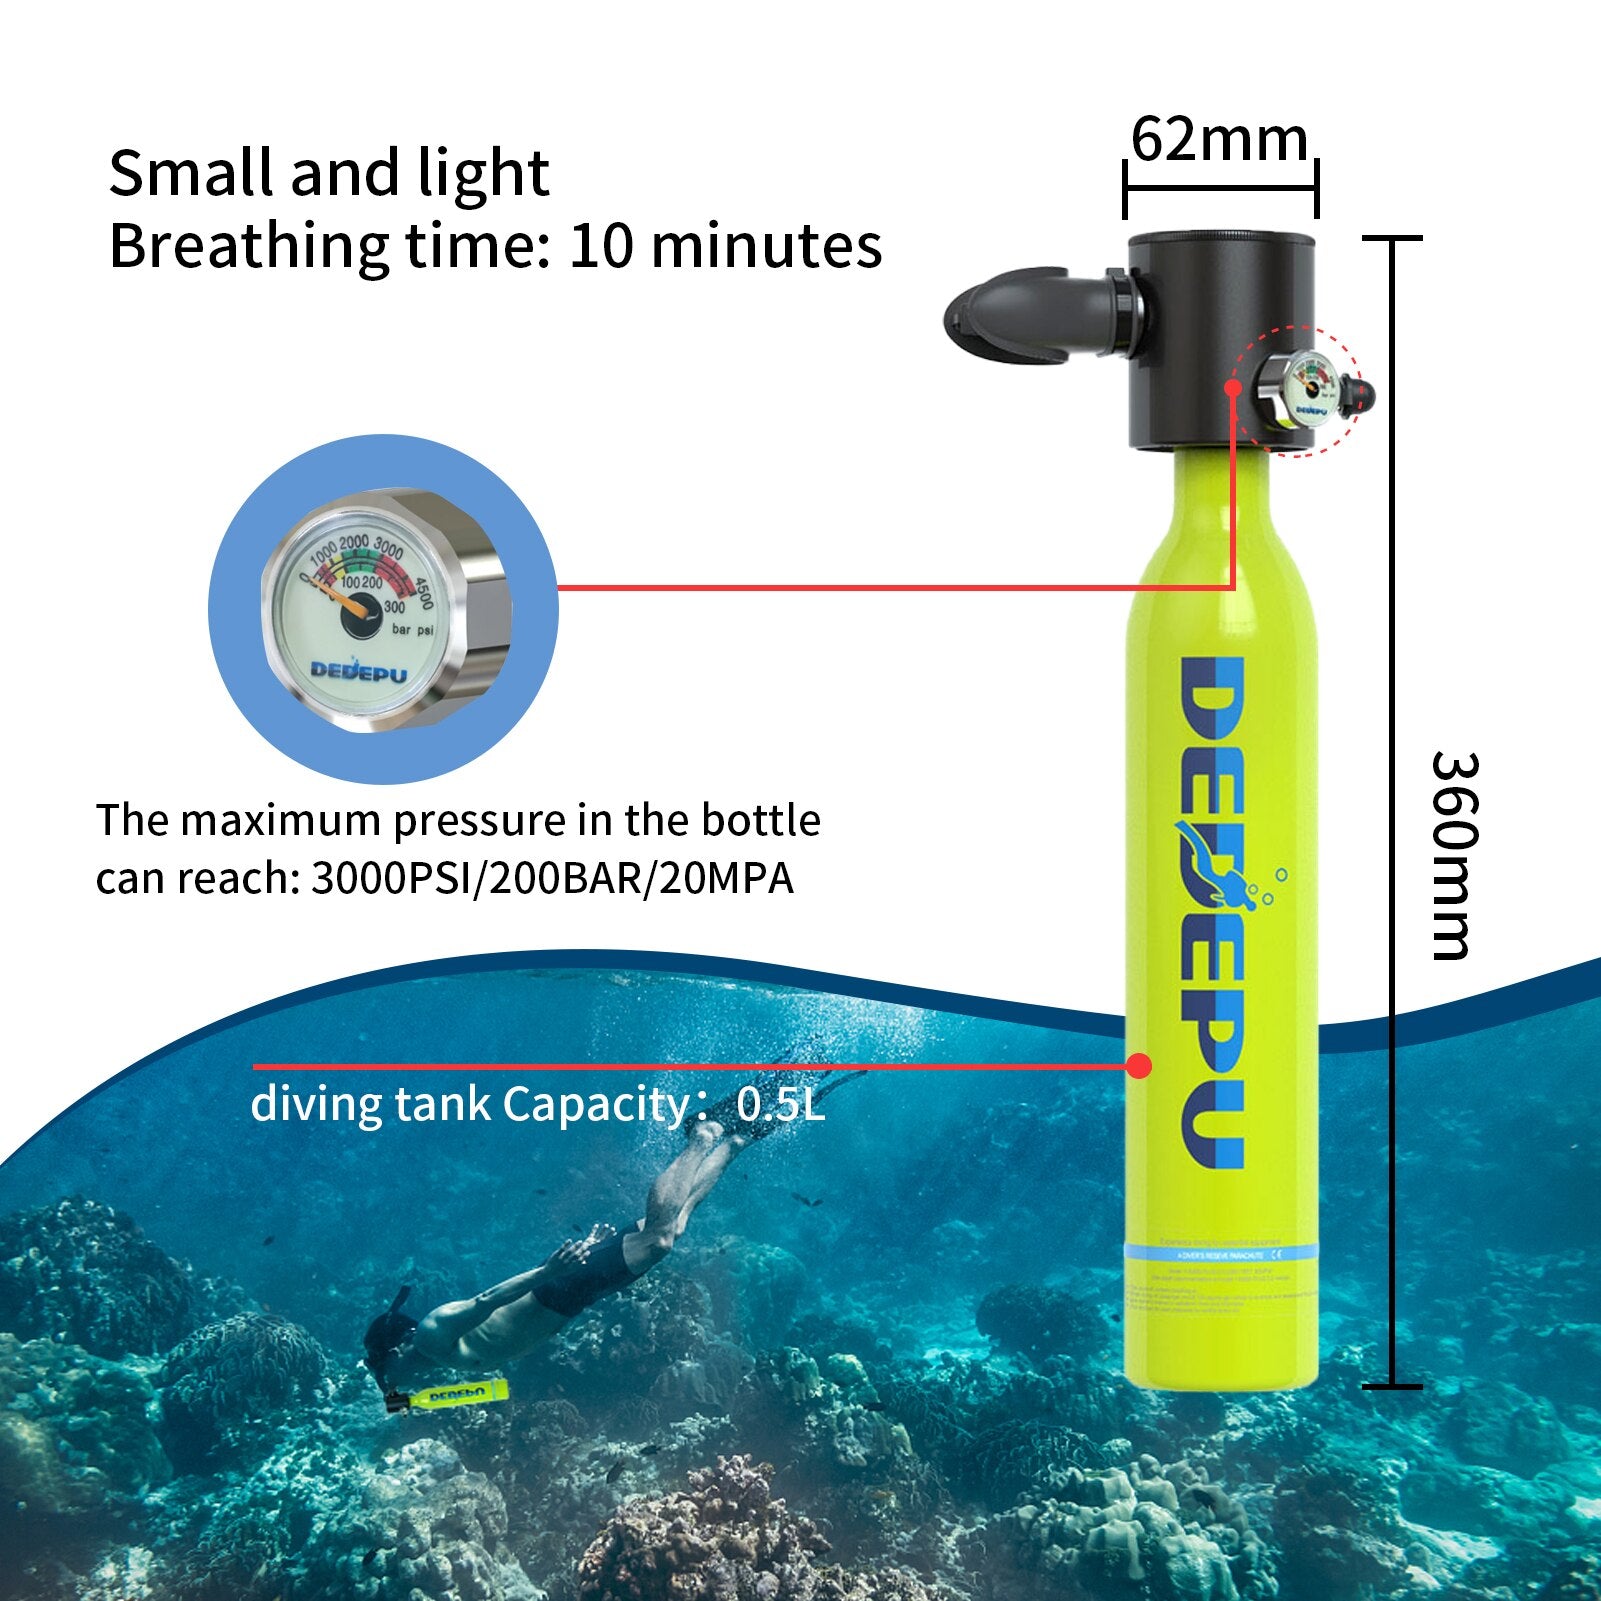 DEDEPU خزان للغوص تحت الماء معدات اسطوانة الغوص الصغيرة الغوص زجاجة الأكسجين مع مضخة يدوية نظارات الغوص الغوص